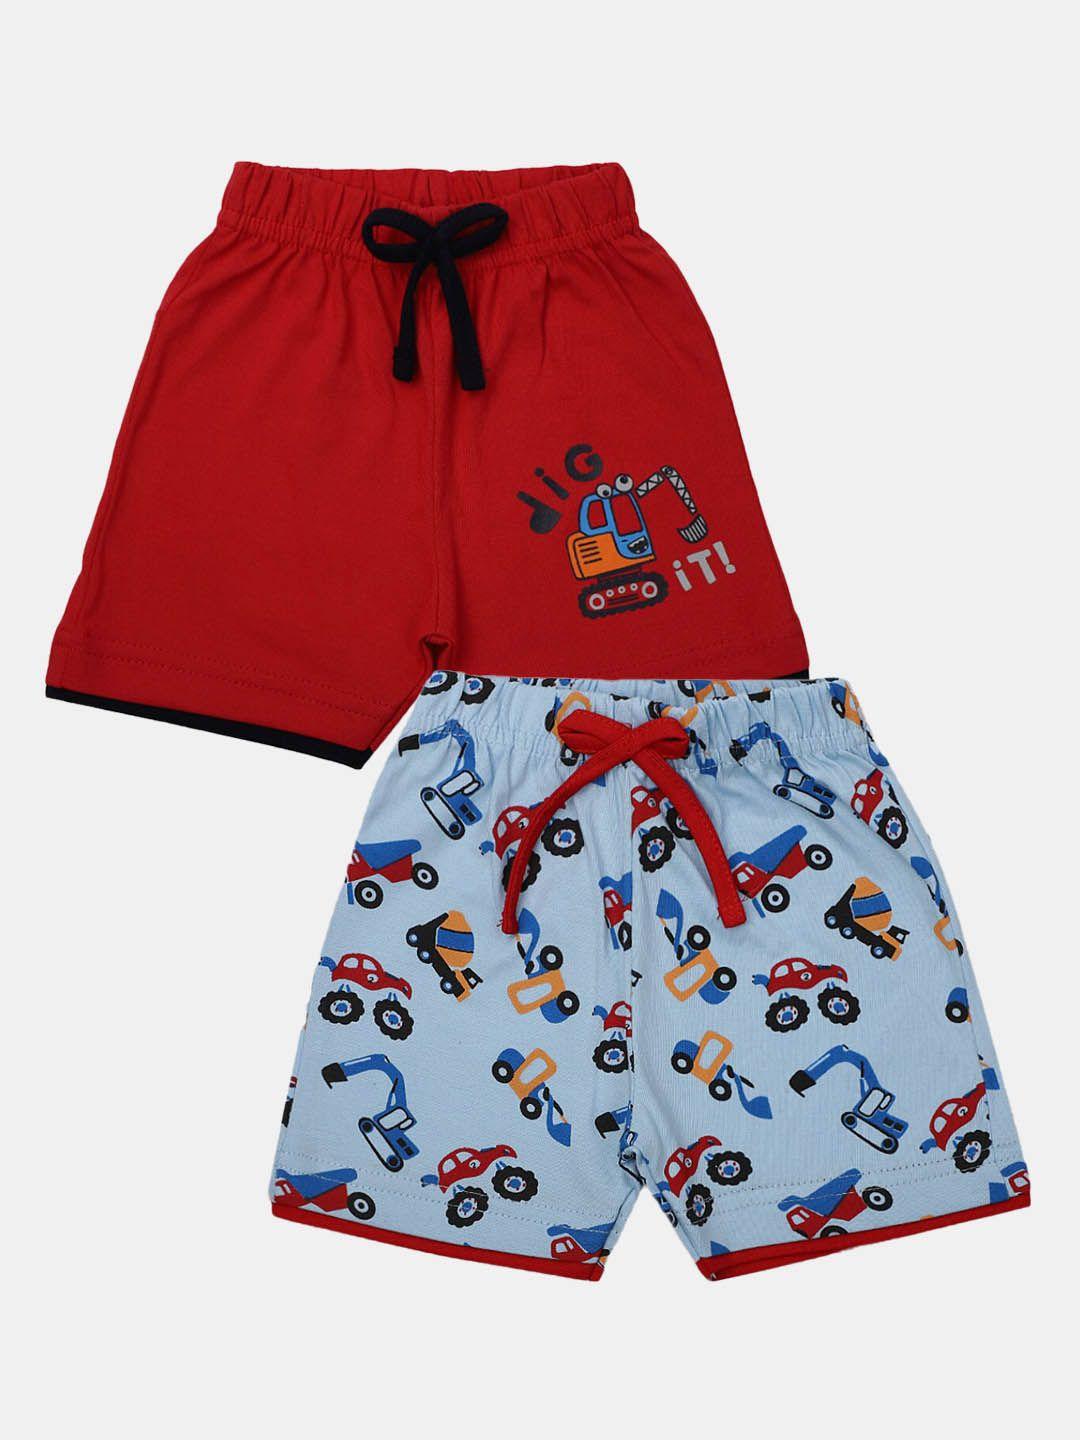 v-mart-infants-pack-of-2-printed-cotton-shorts